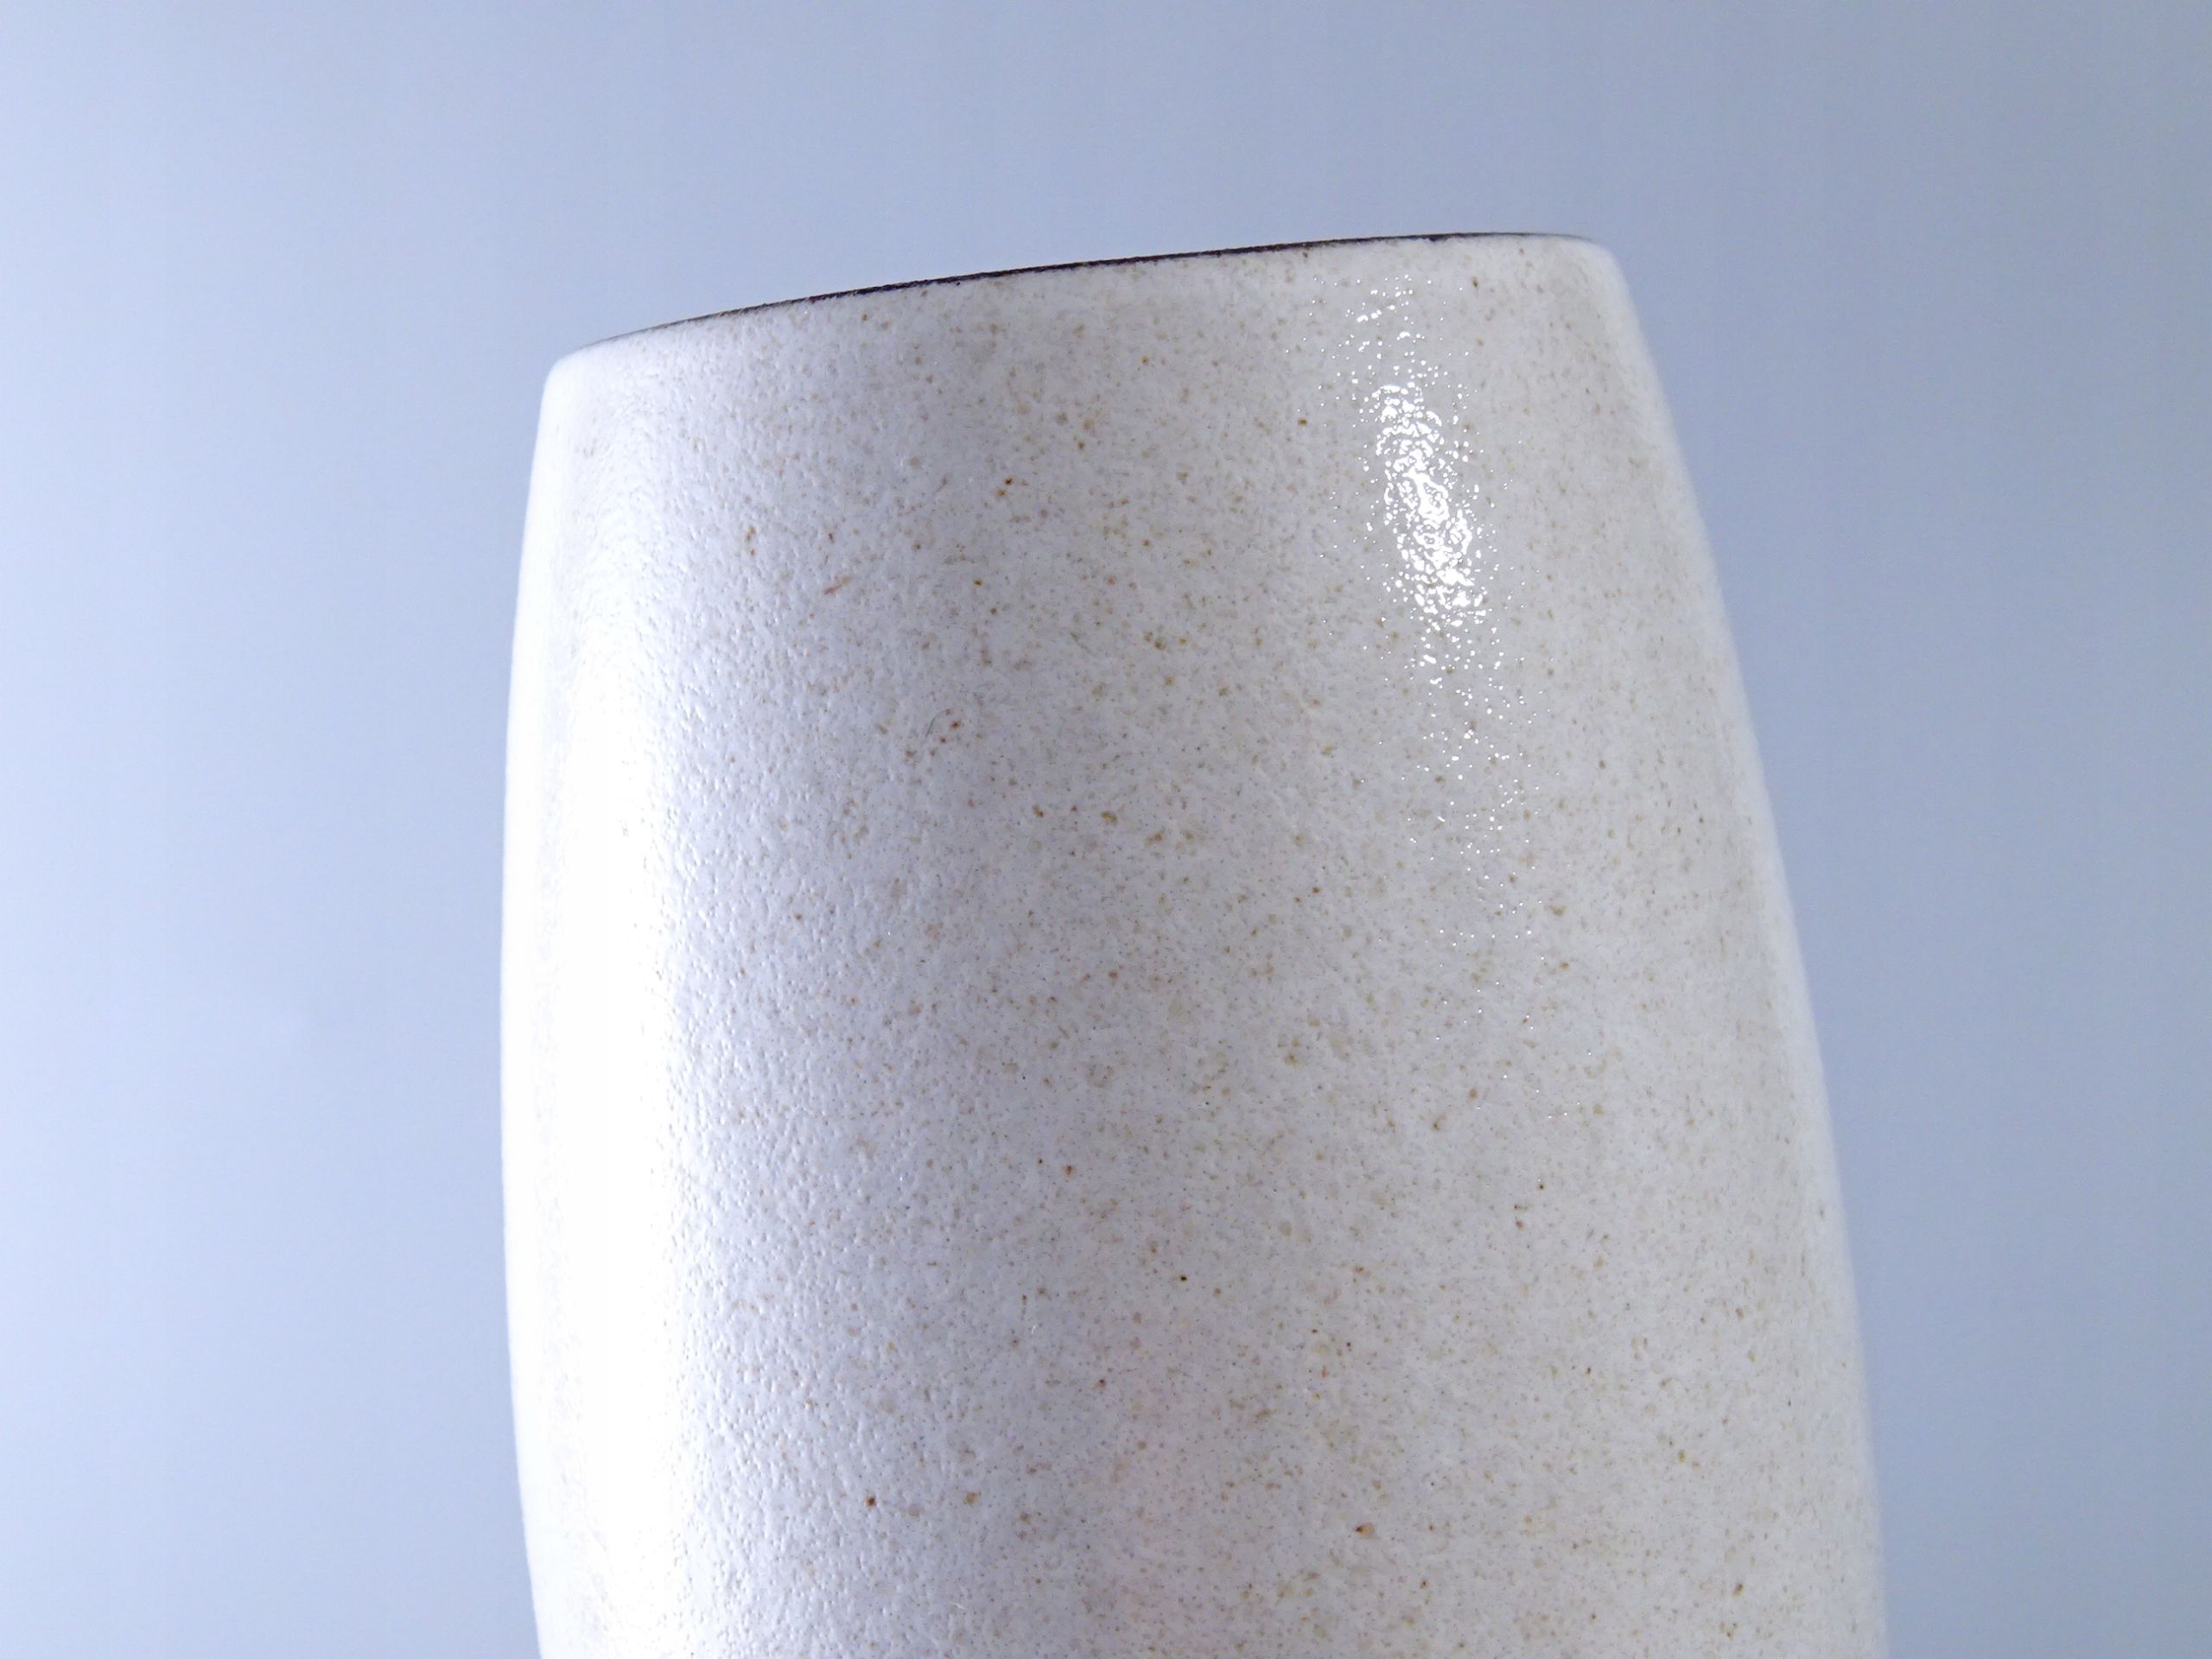 lata 70 designerski wazon ceramiczny